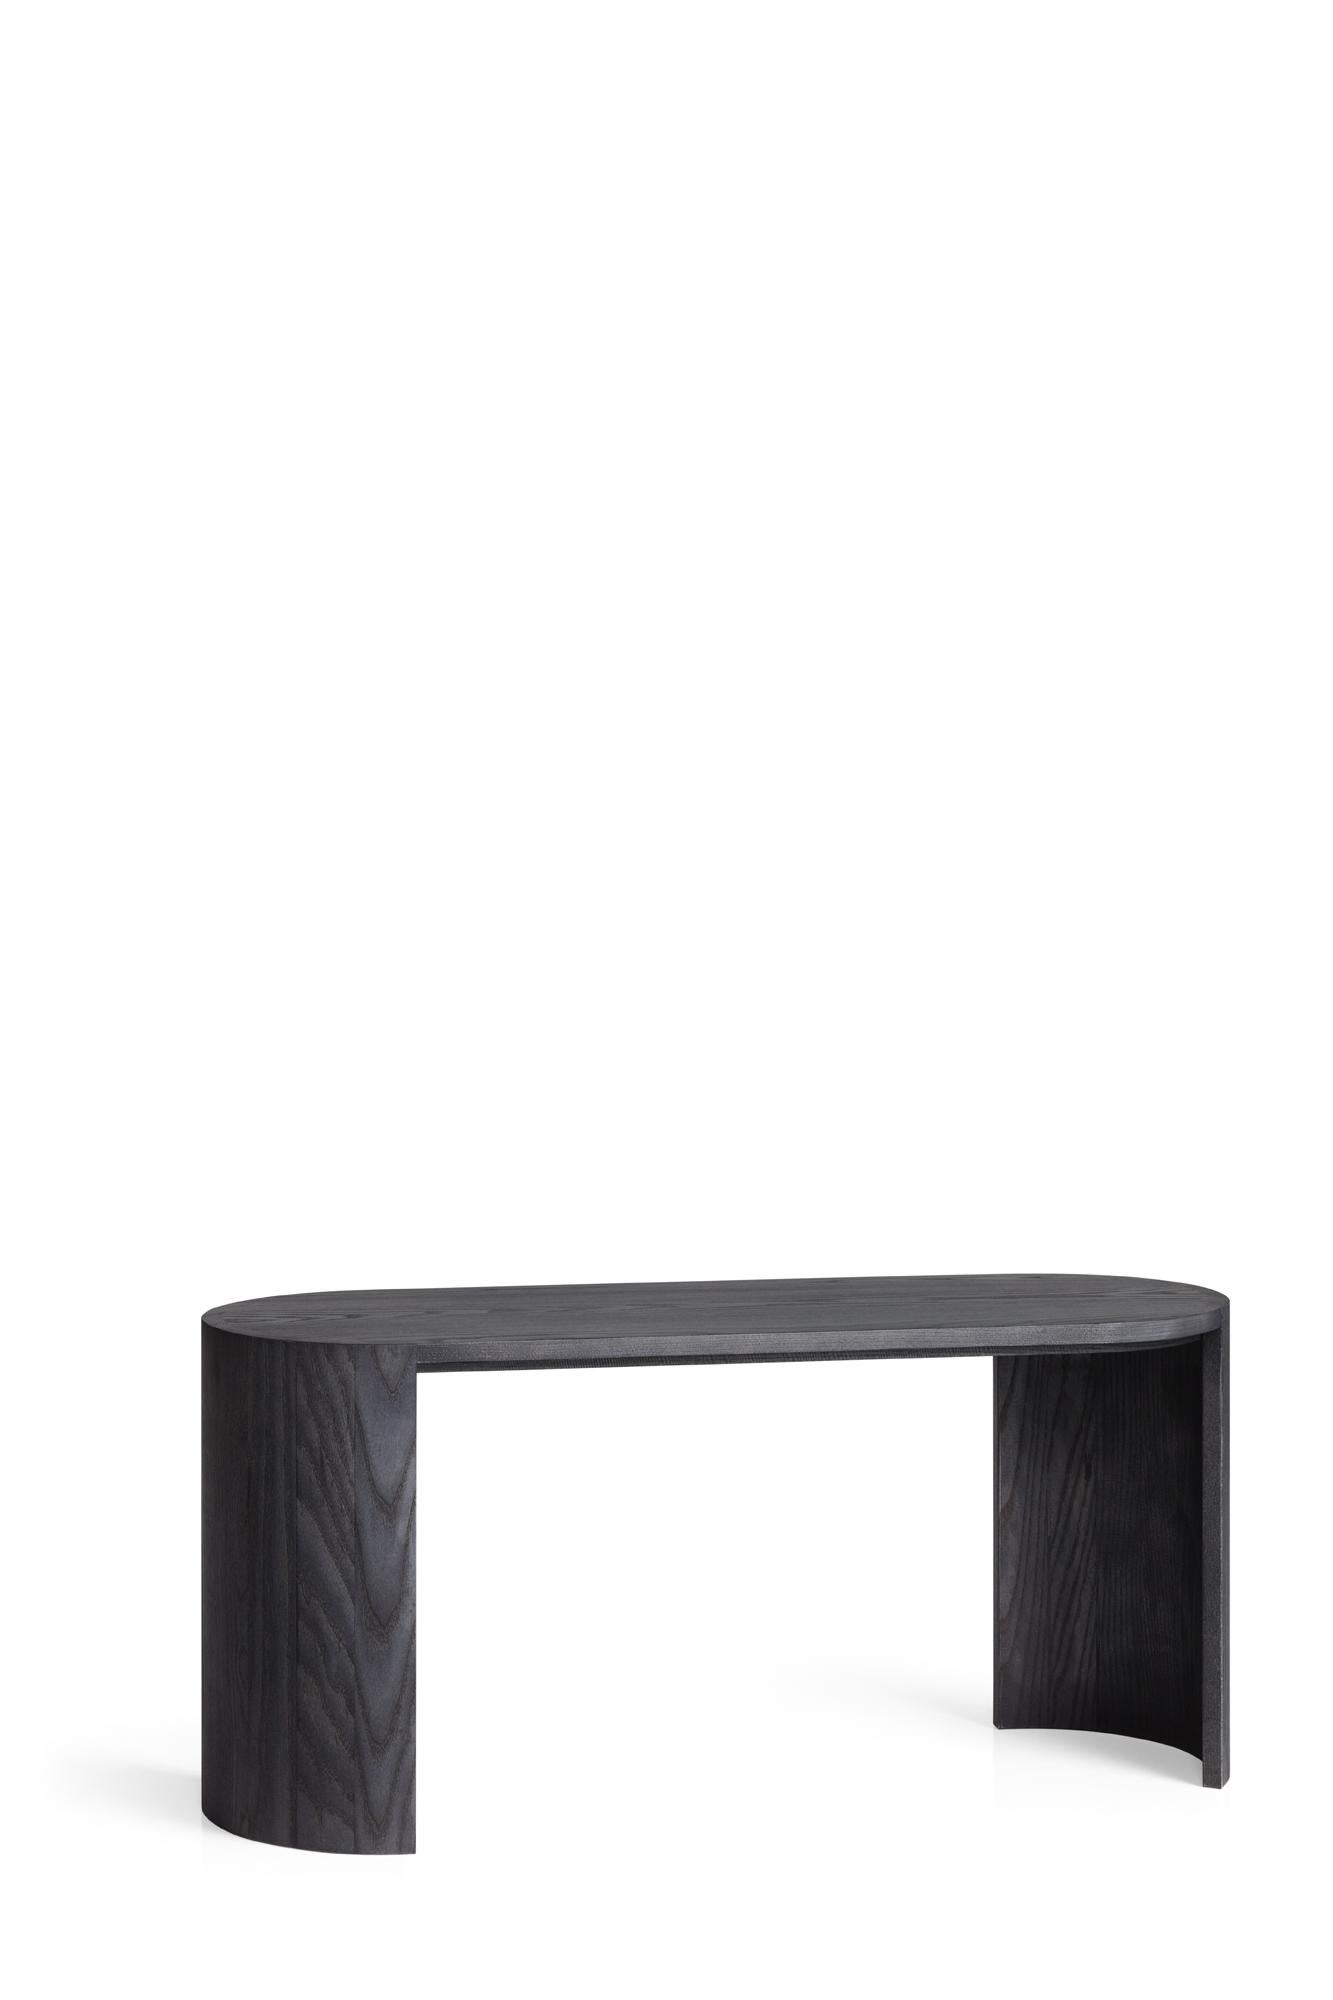 Banc Airisto avec Joanna Laajisto. Les meubles de la collection Airisto sont multifonctionnels, ils peuvent être utilisés comme table d'appoint, tabouret et banc. Le frêne naturel met en valeur les belles caractéristiques du bois. En plus du bois